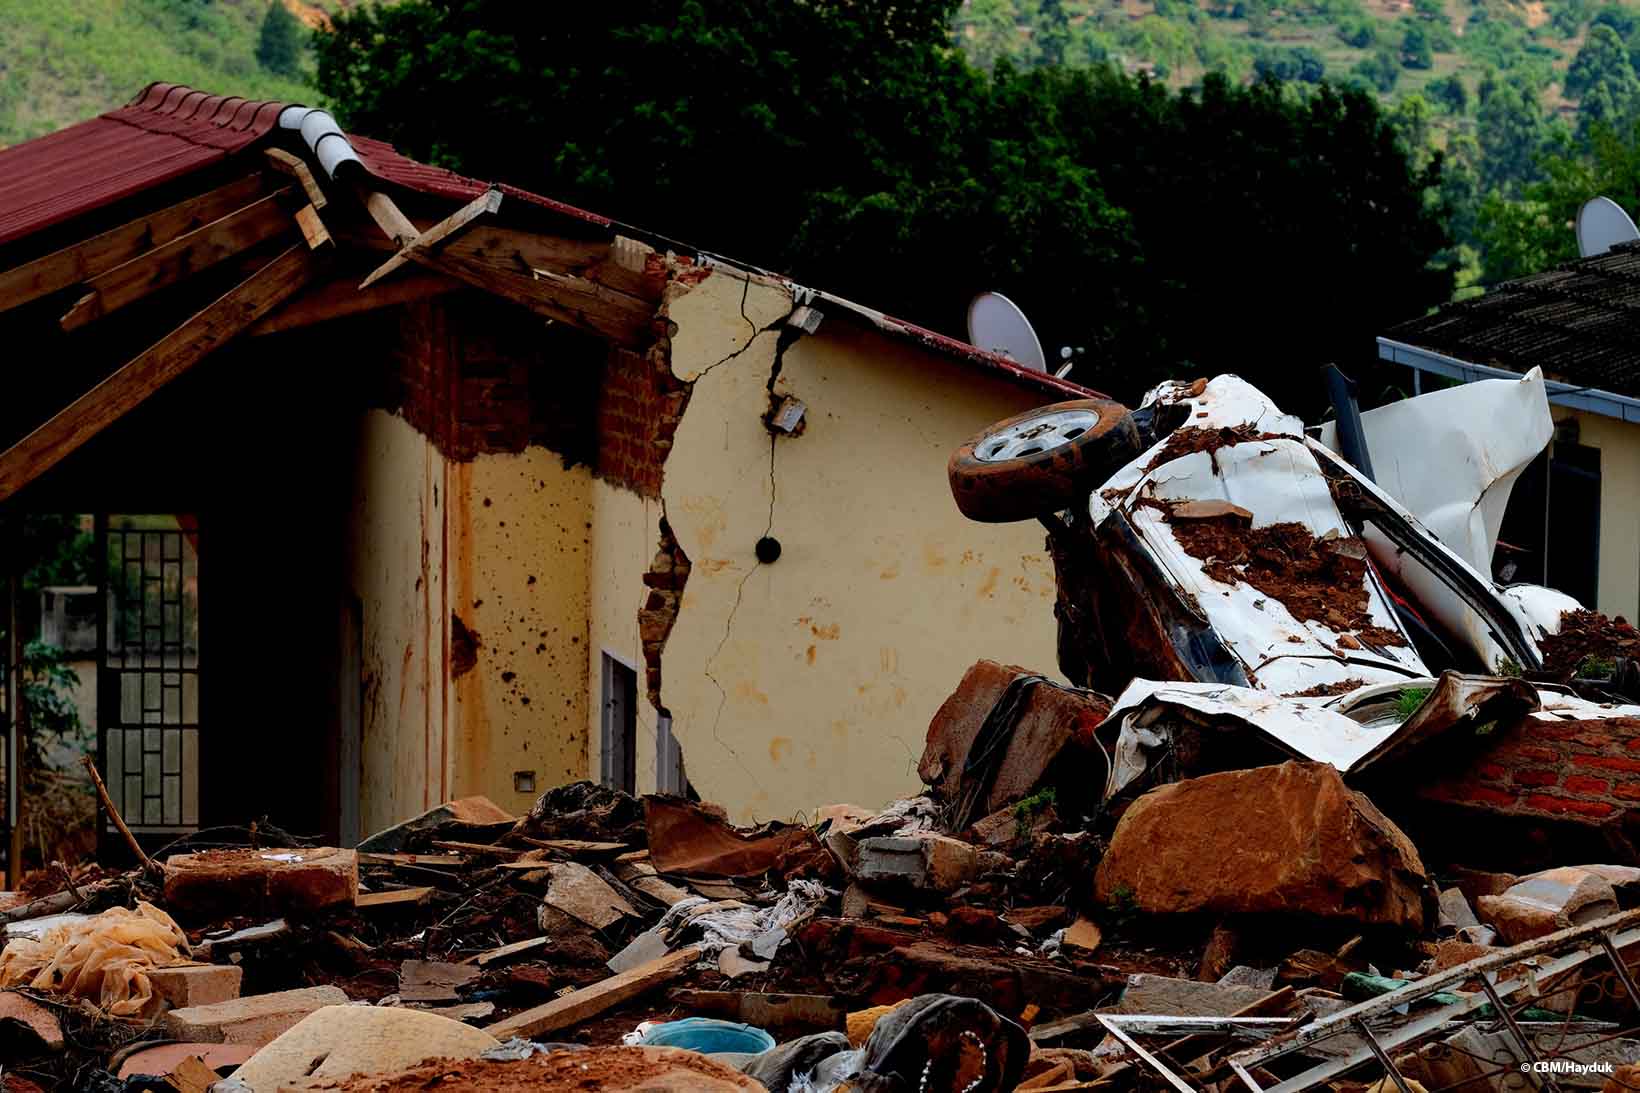 Une maison détruite par le cyclone Idai, qui a frappé le Zimbabwe. A l’avant-plan, on voit une voiture complètement détruite et des gravats.